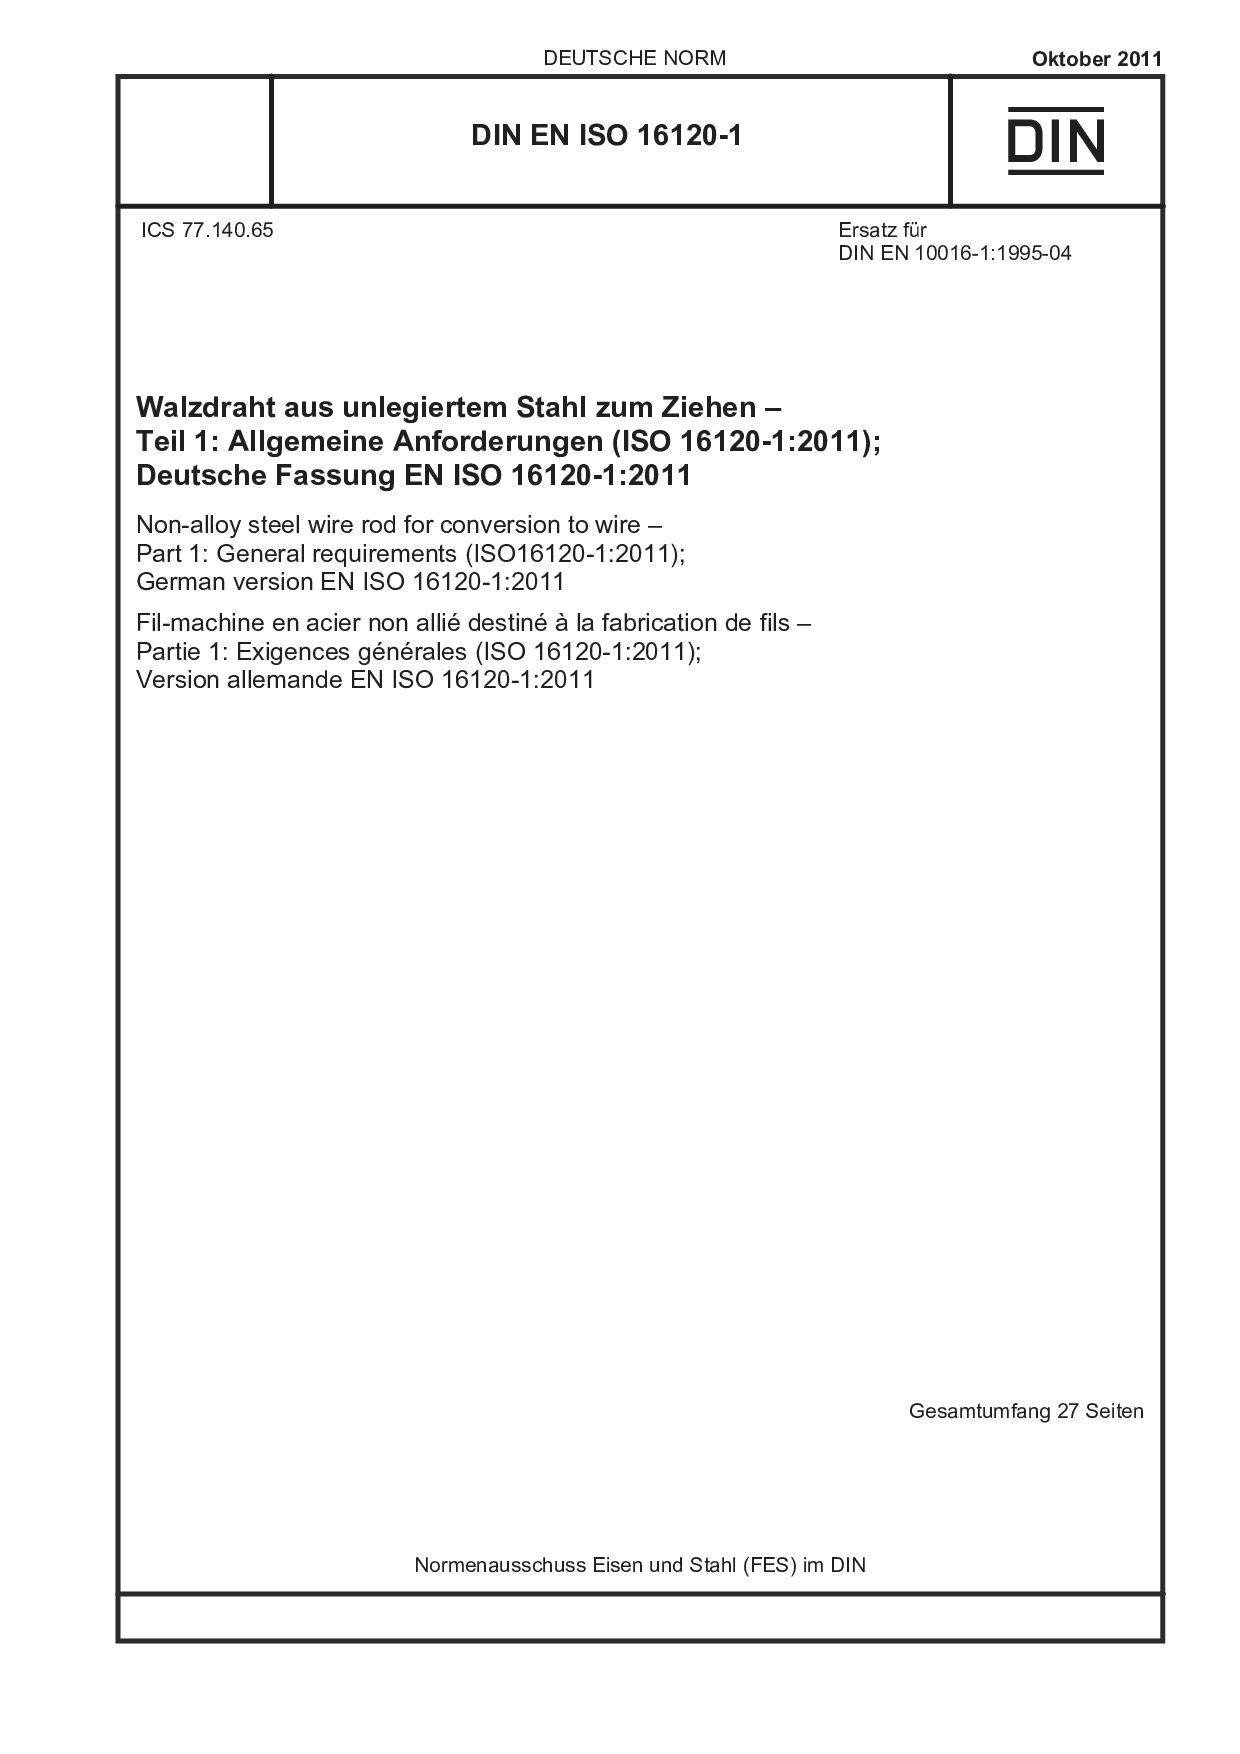 DIN EN ISO 16120-1:2011封面图